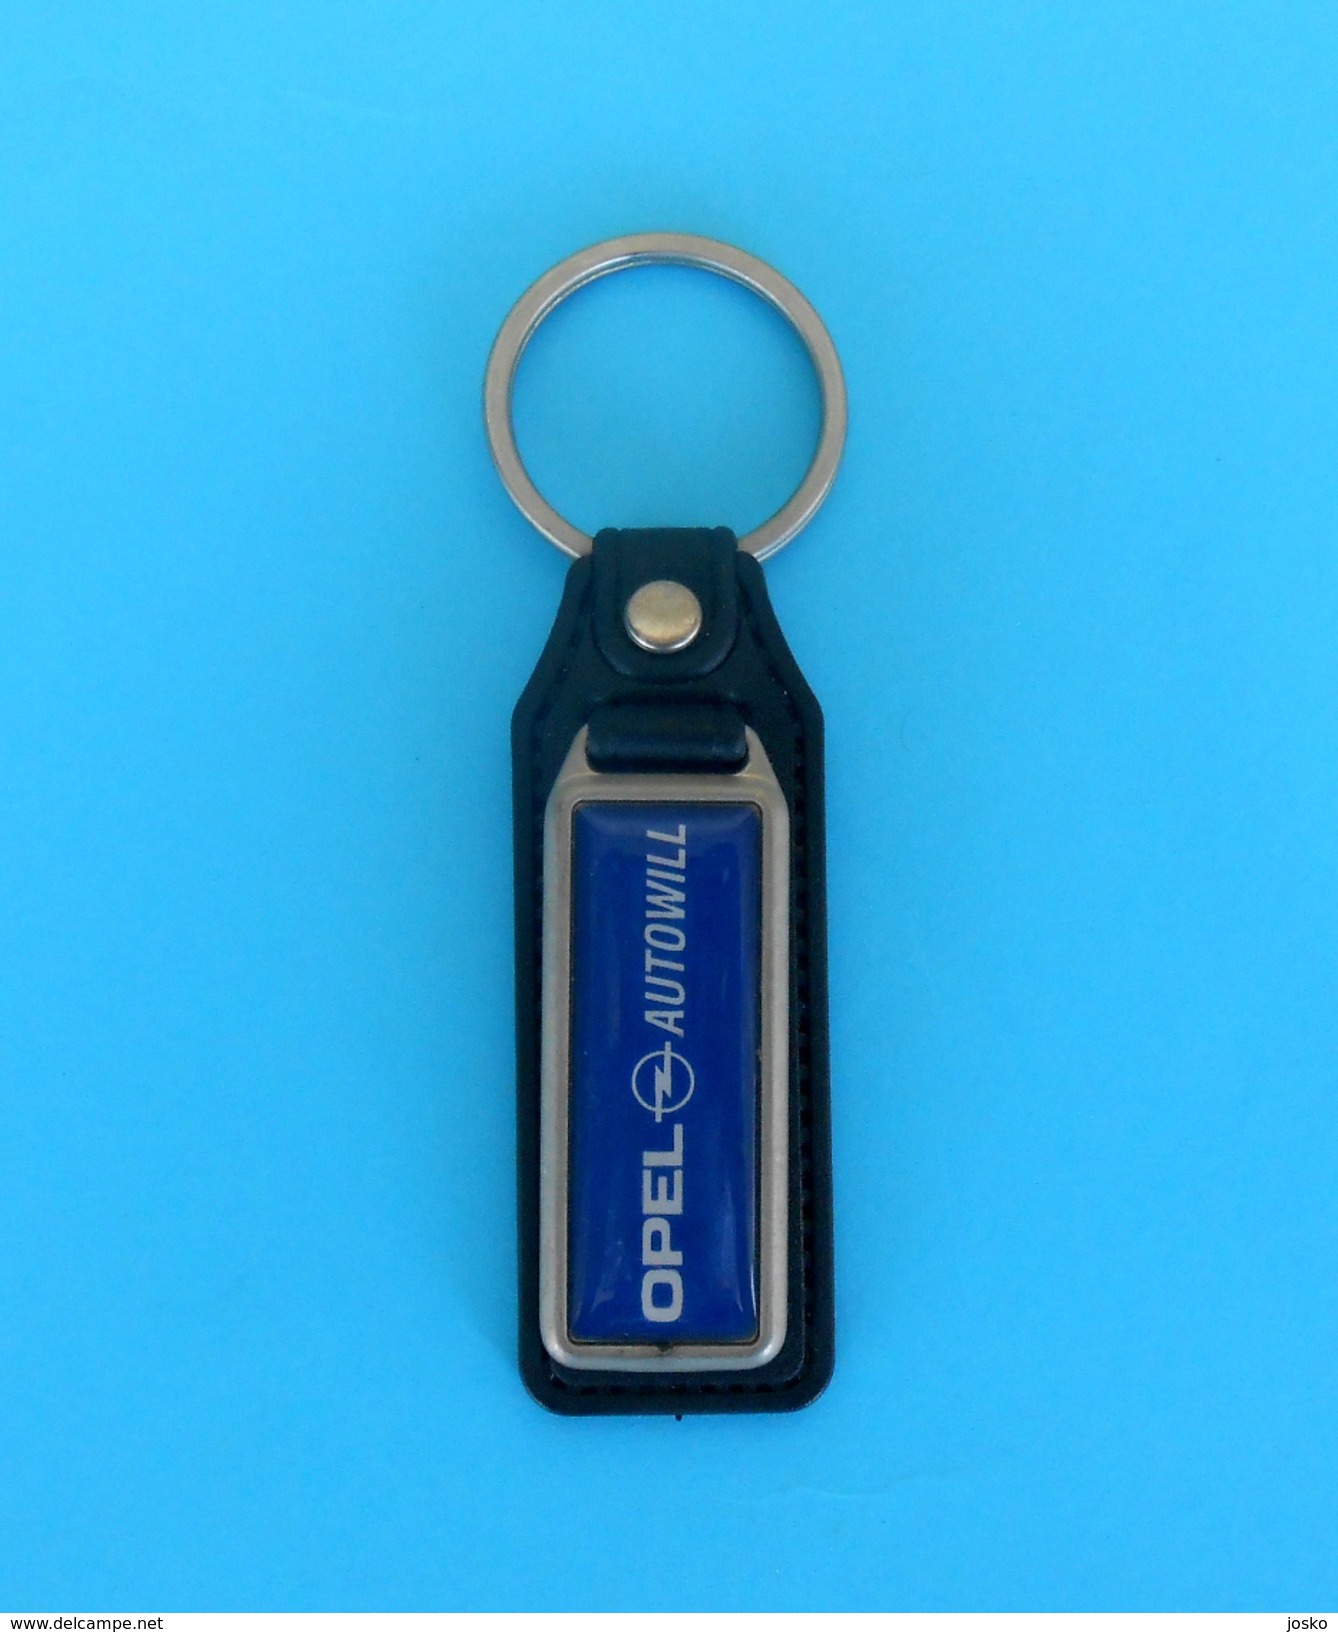 OPEL - Vintage Leather Keychain Car Automobile Automobil Key-ring Porte-clés Schlüsselring Anello Portachiavi Key-chain - Porte-clefs